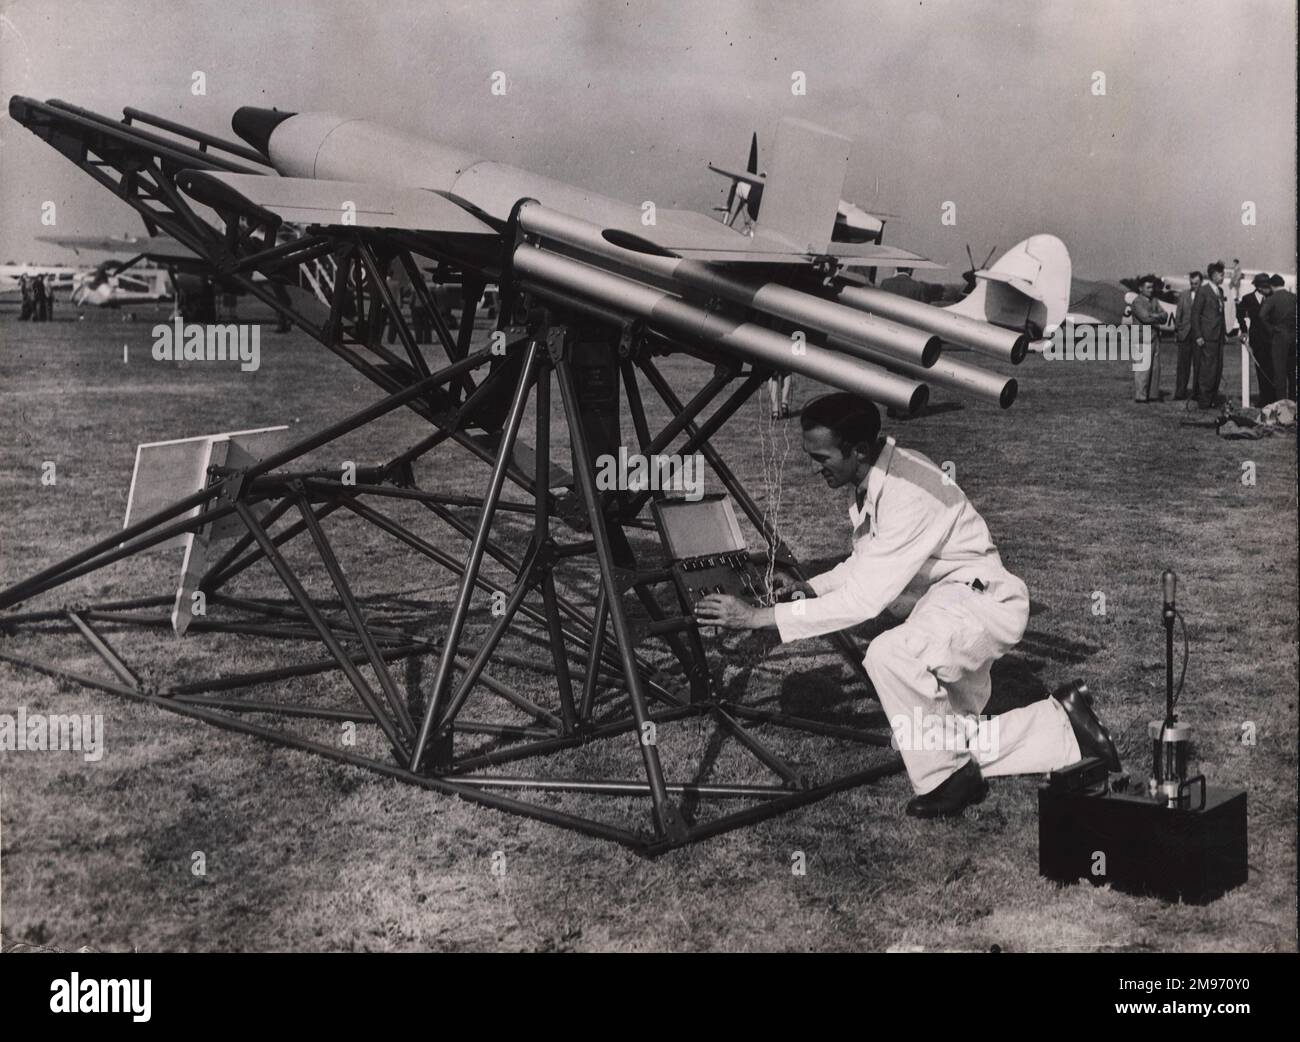 Fairey Stooge, die erste britische, pilotenlose, funkgesteuerte Rakete auf der SBAC-Show 1947 in Radlett. Stockfoto